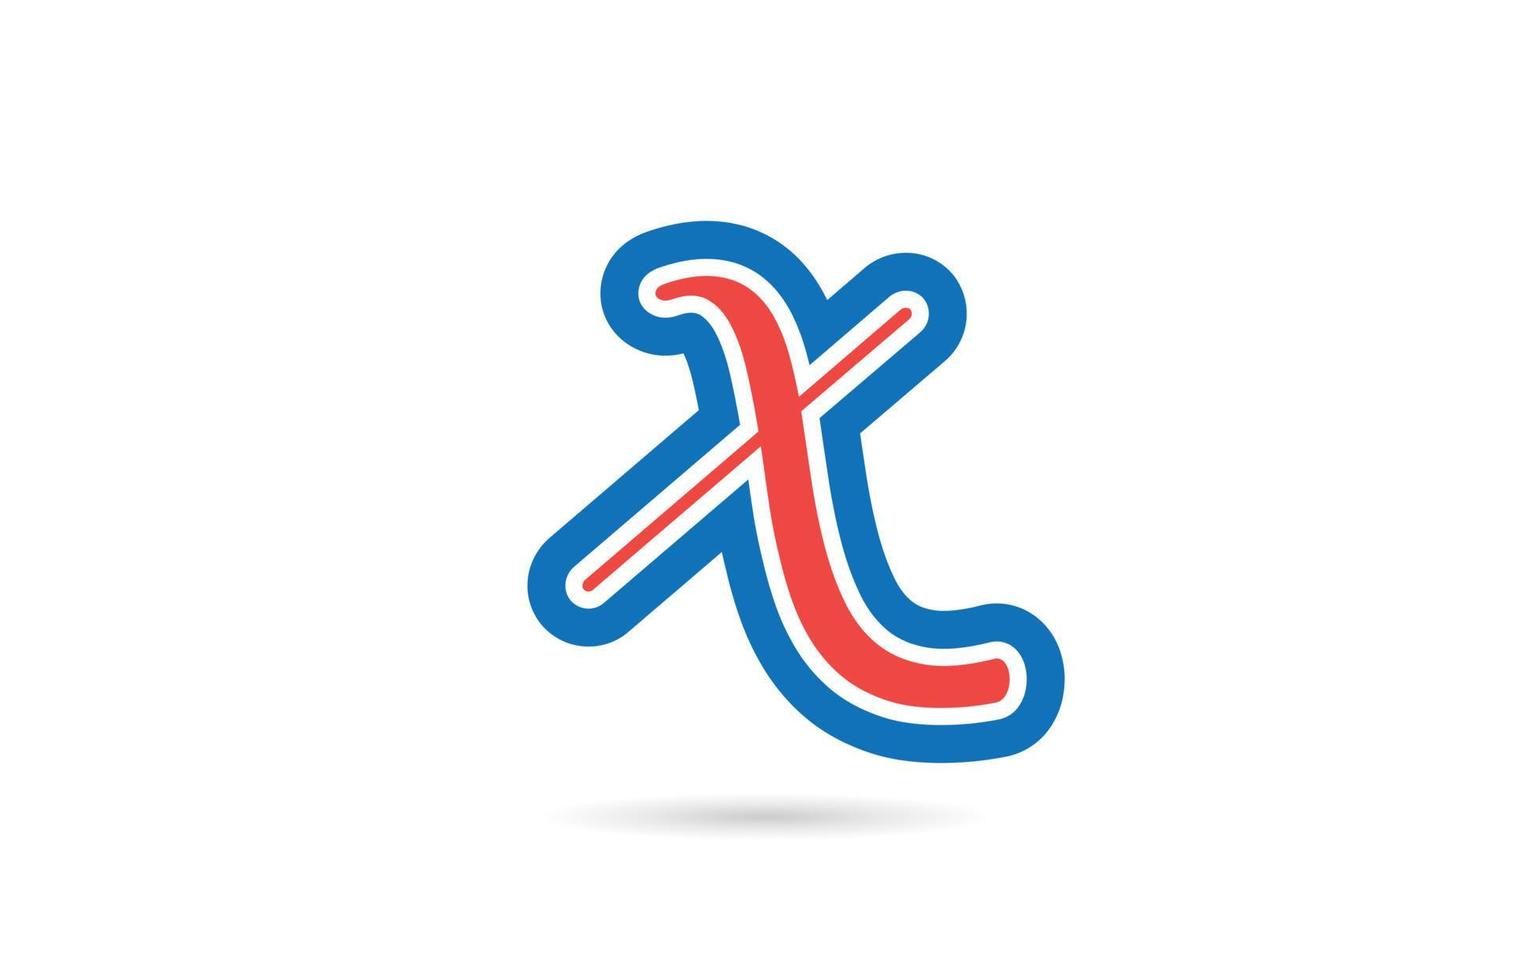 rojo azul escrito a mano x letra del alfabeto icono de diseño de logotipo. plantilla creativa para negocios y empresas. vector